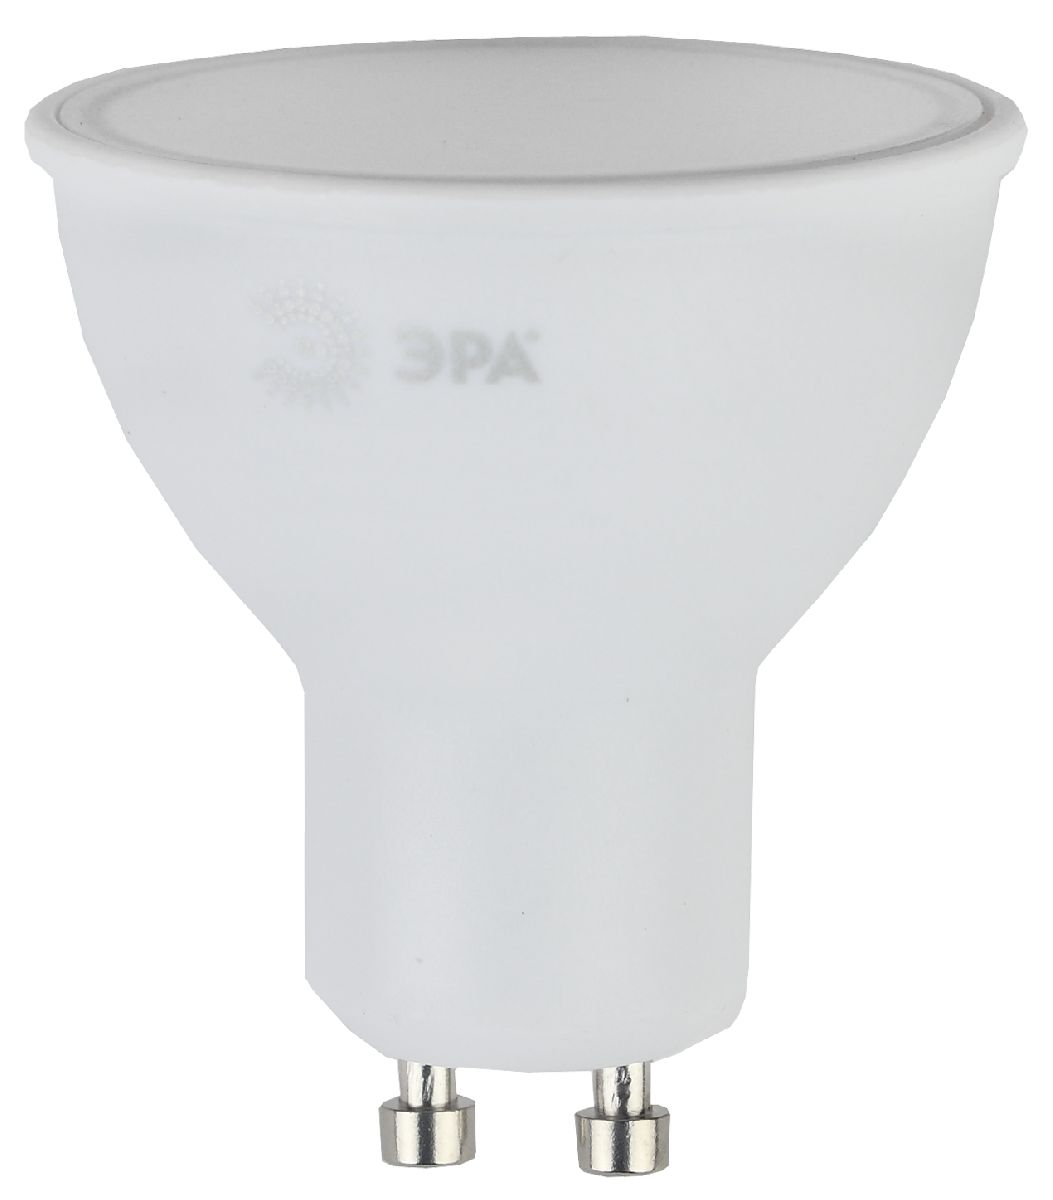 Лампа светодиодная Эра GU10 10W 4000K LED MR16-10W-840-GU10 Б0032998